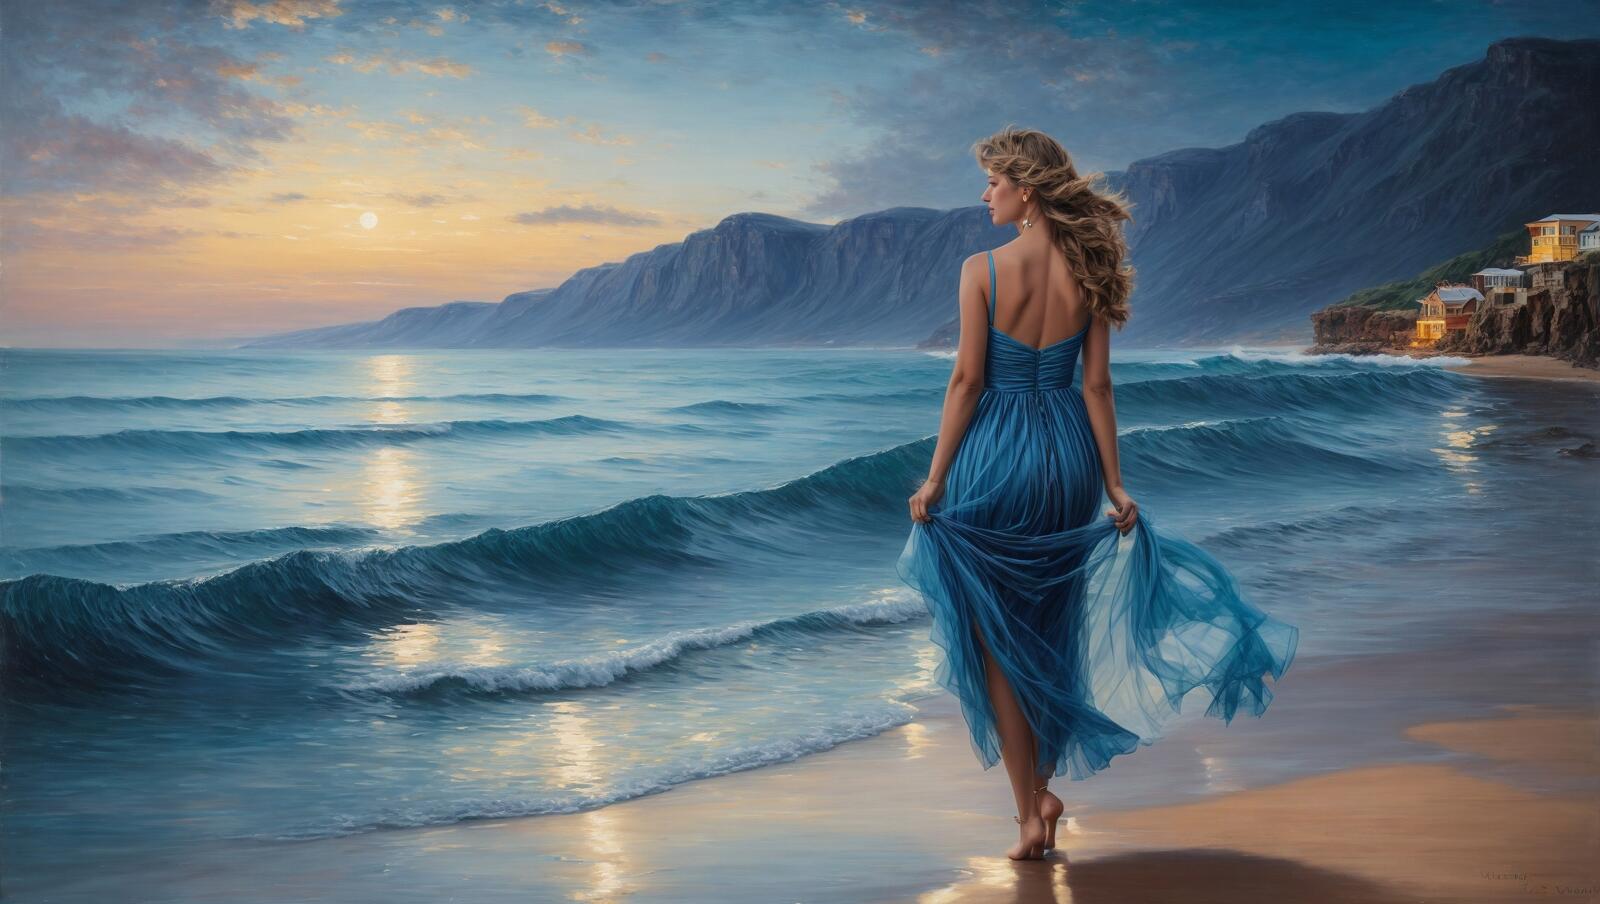 Бесплатное фото Картина с изображением женщины в голубом платье, идущей по пляжу